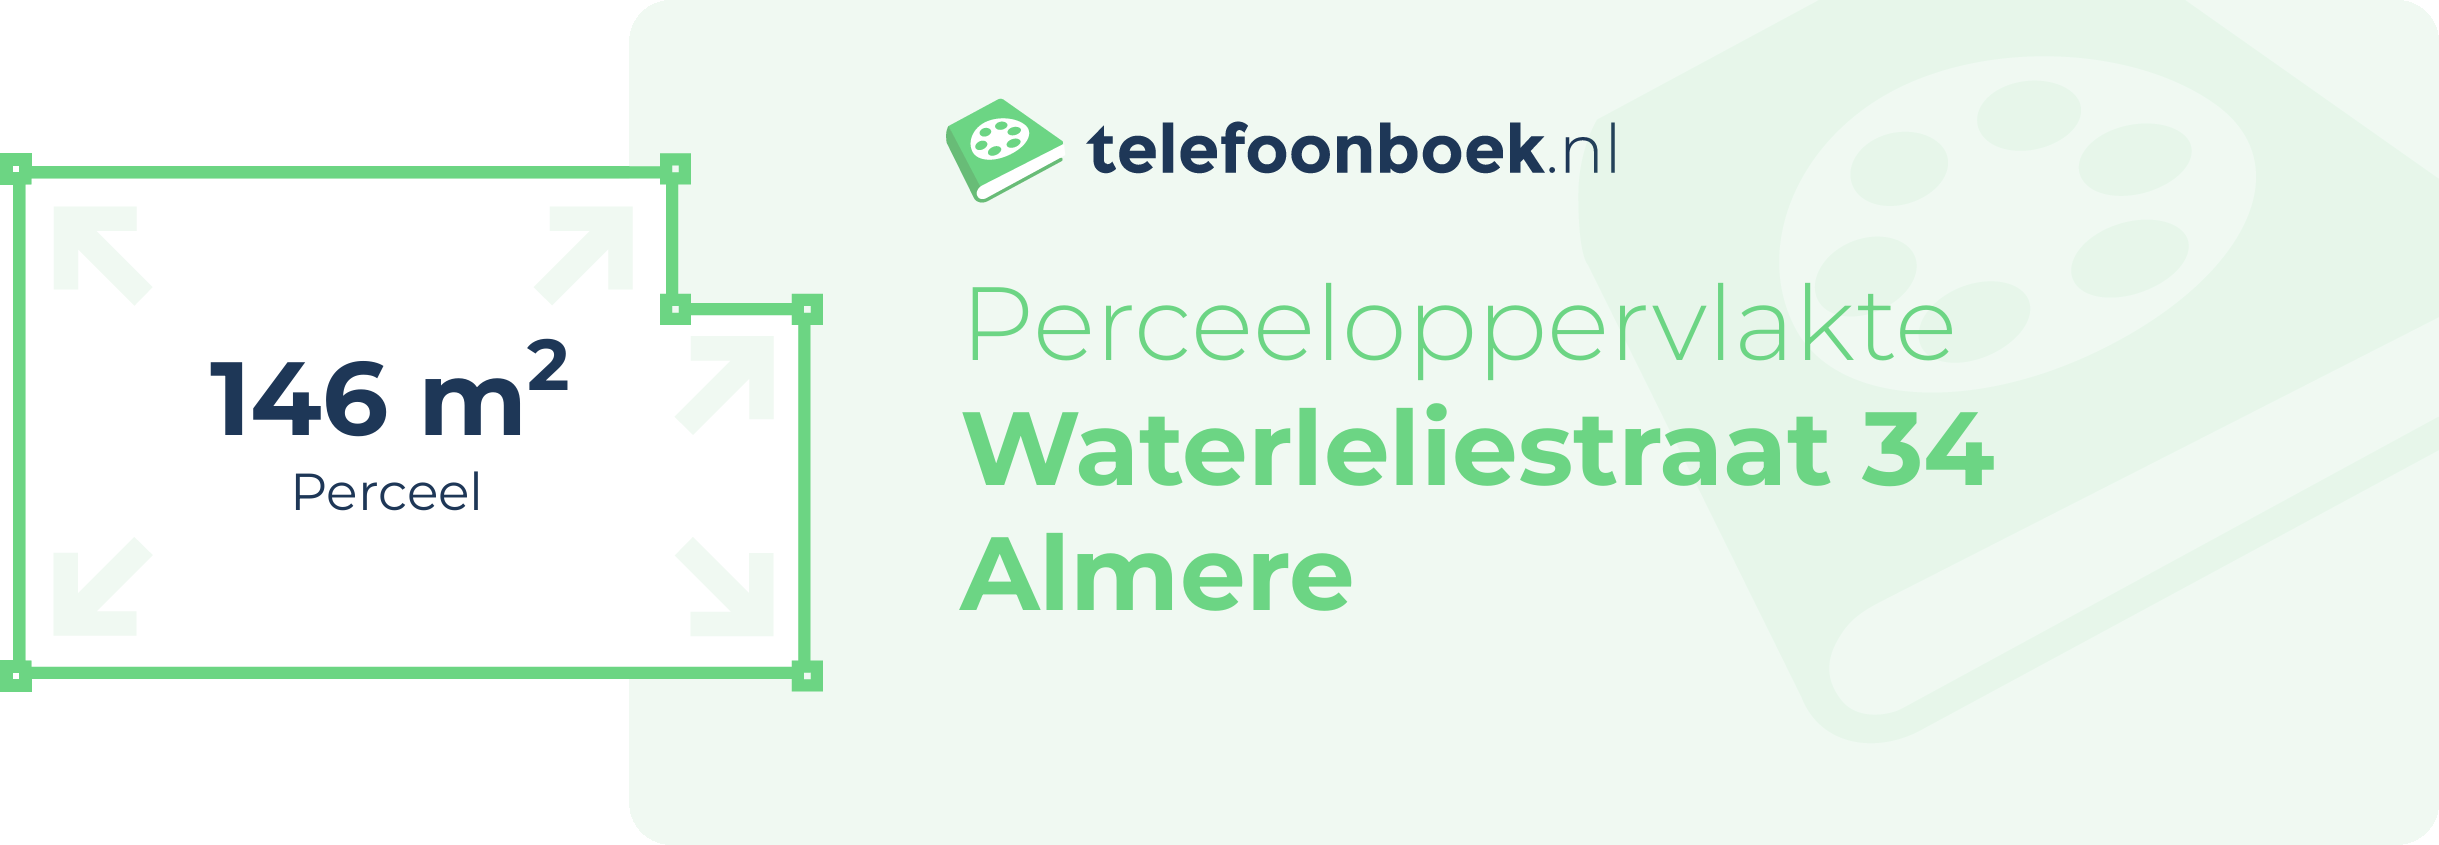 Perceeloppervlakte Waterleliestraat 34 Almere